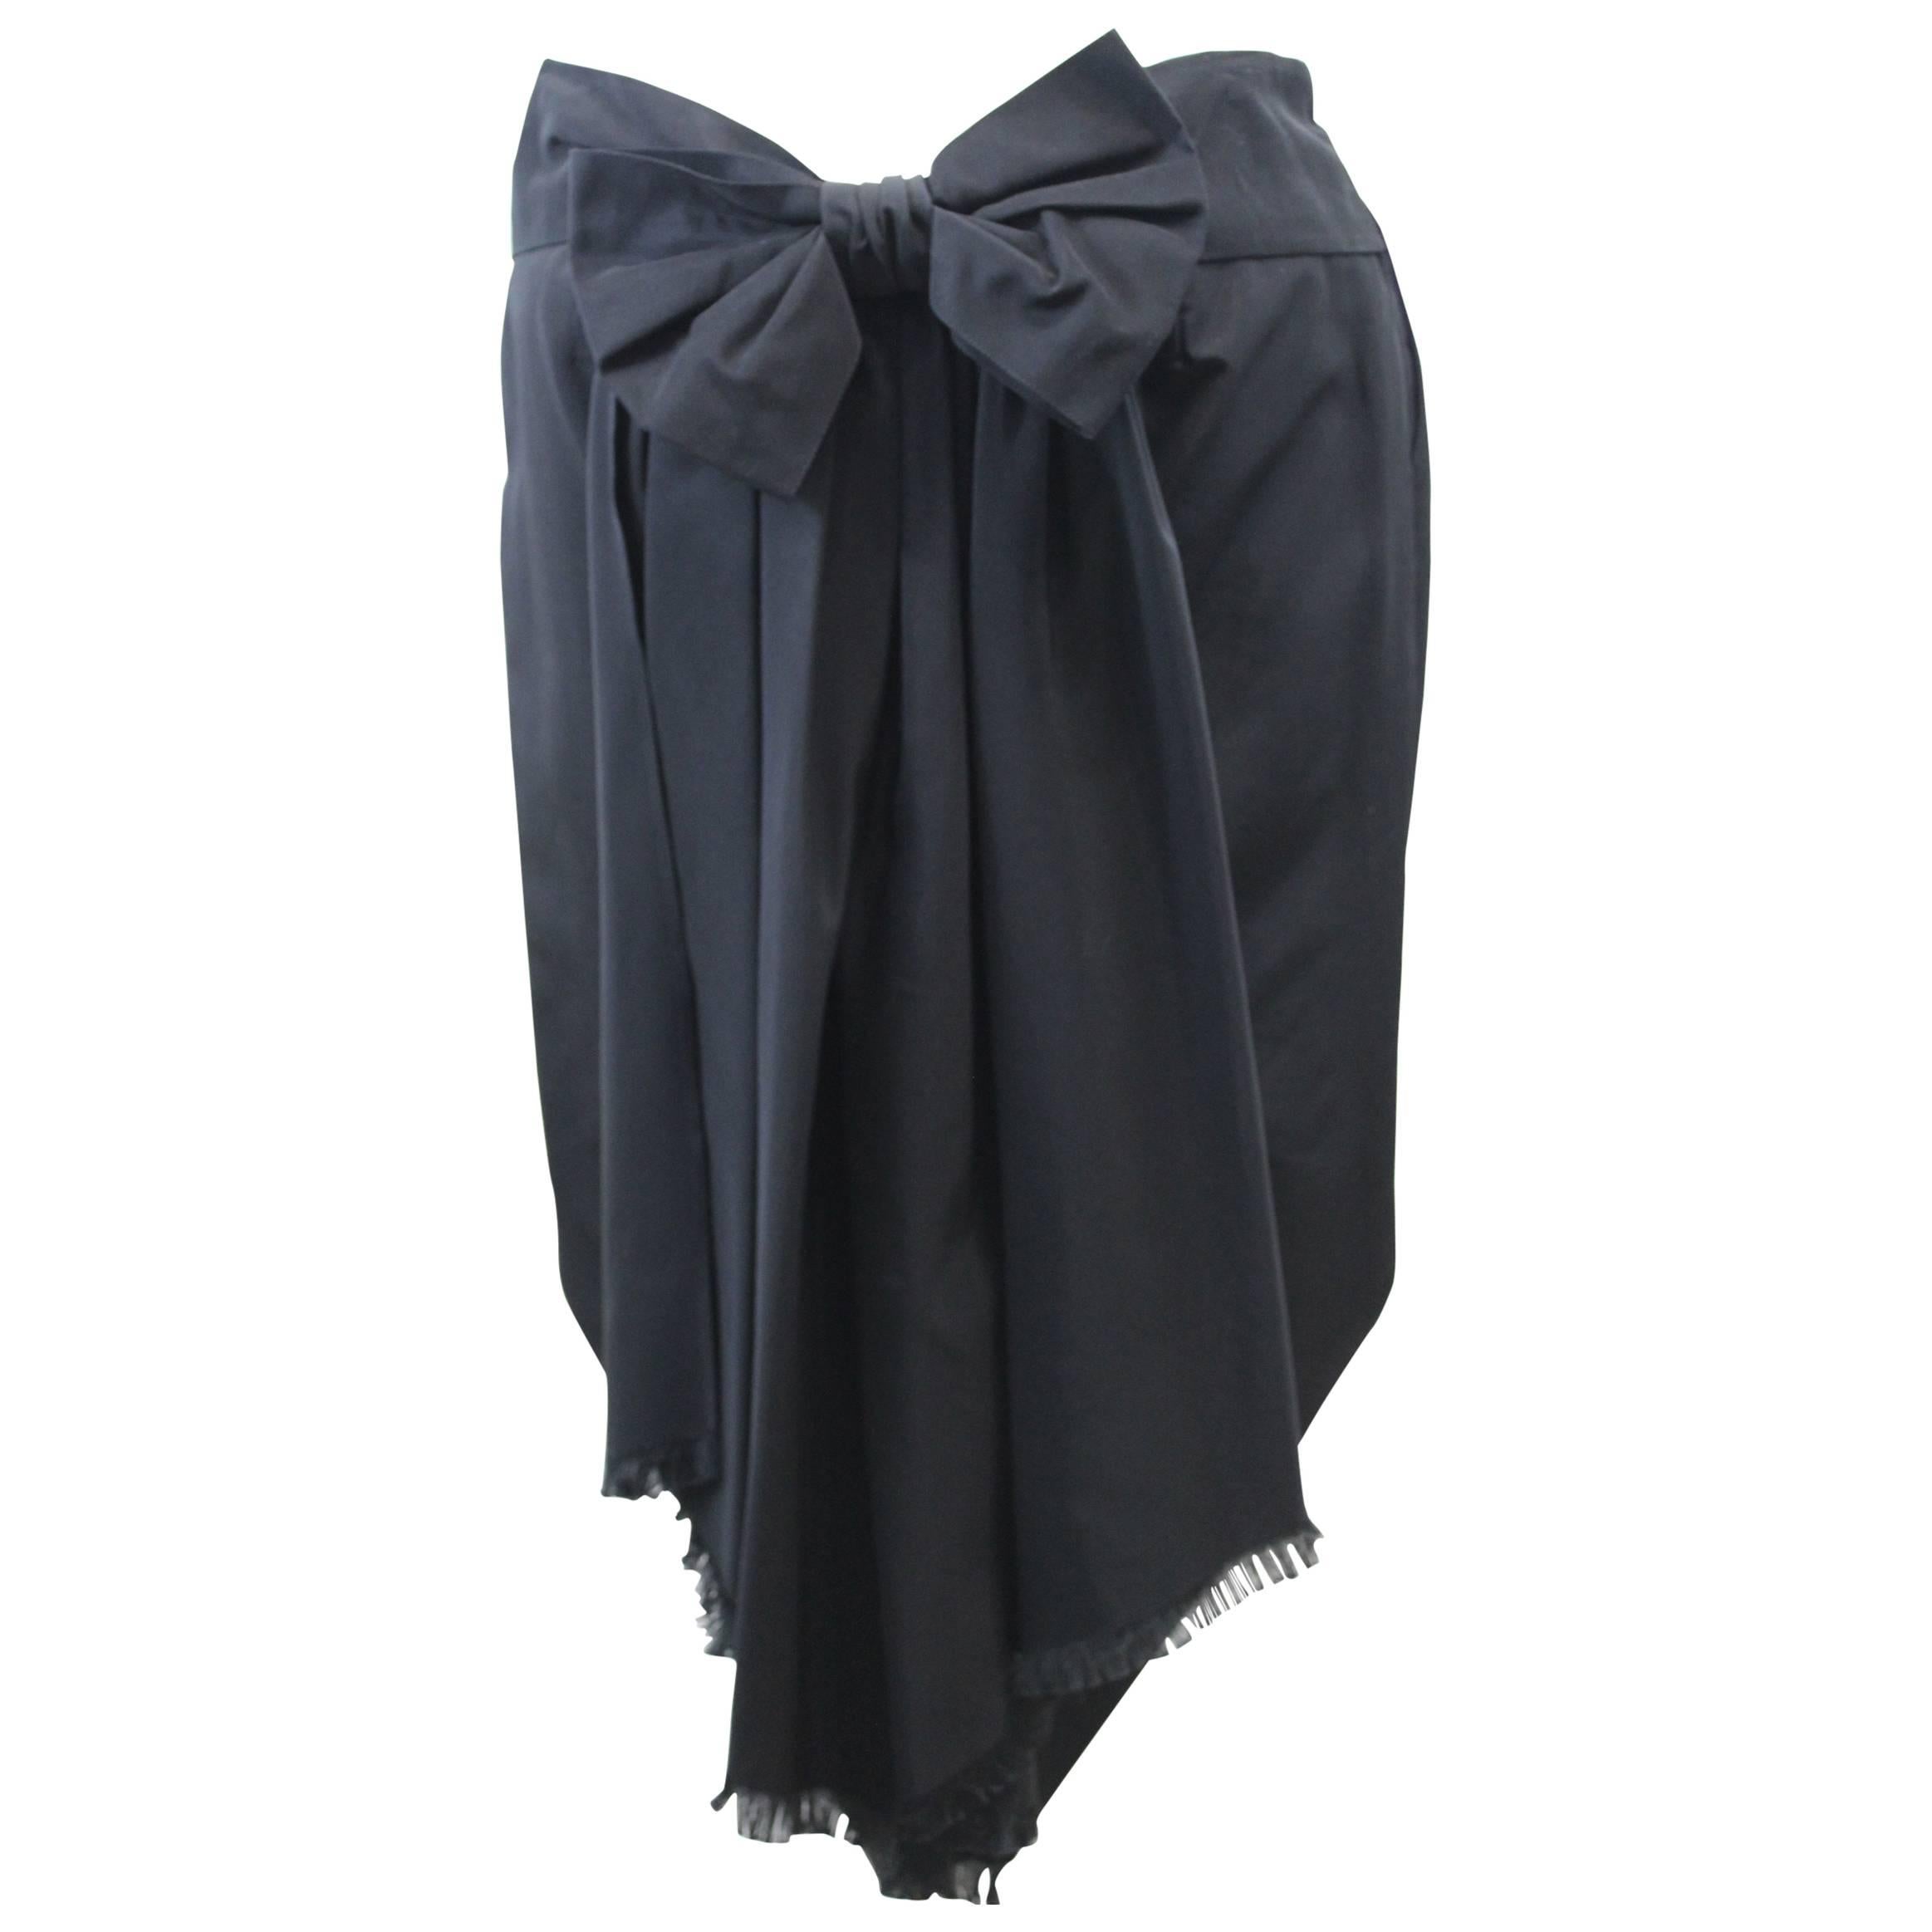 Jean Paul Gaultier Back Ribbon Skirt. Size 14 (44)